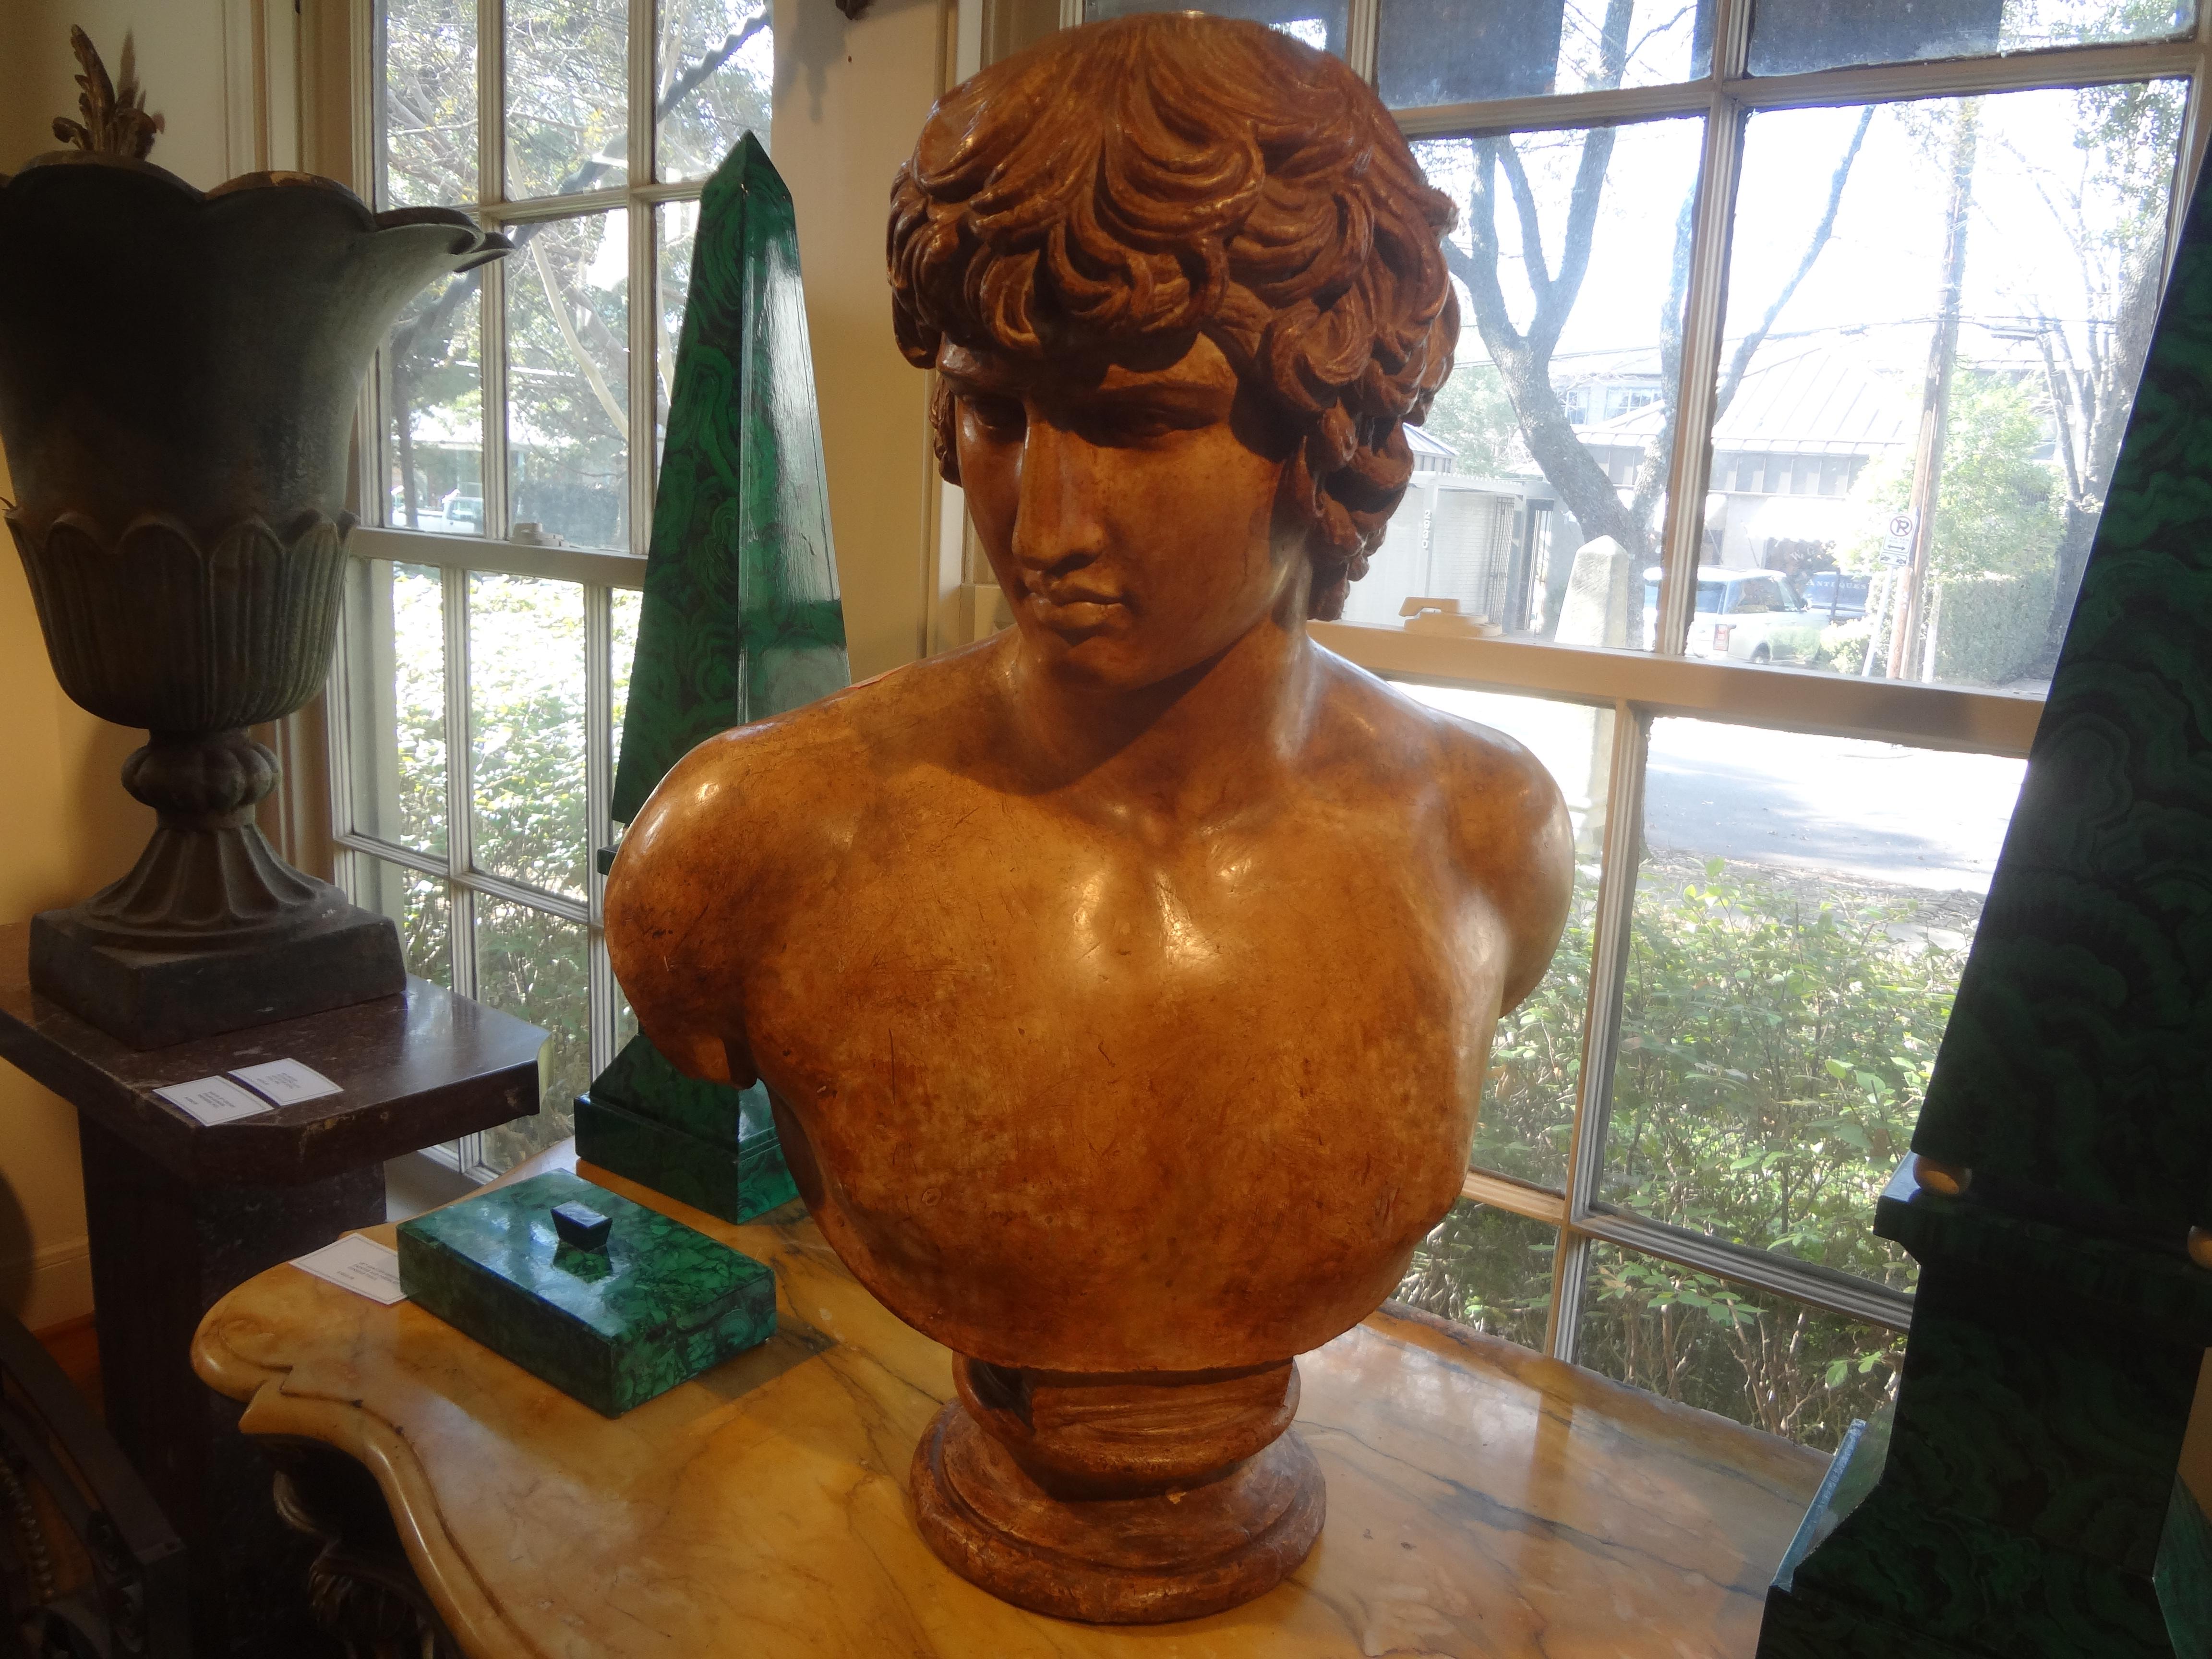 Buste en terre cuite italien du XIXe siècle représentant un homme classique.
Ce monumental buste italien antique en terre cuite représentant un homme romain classique est une œuvre d'art.
Cette pièce est bien exécutée et serait parfaite sur un